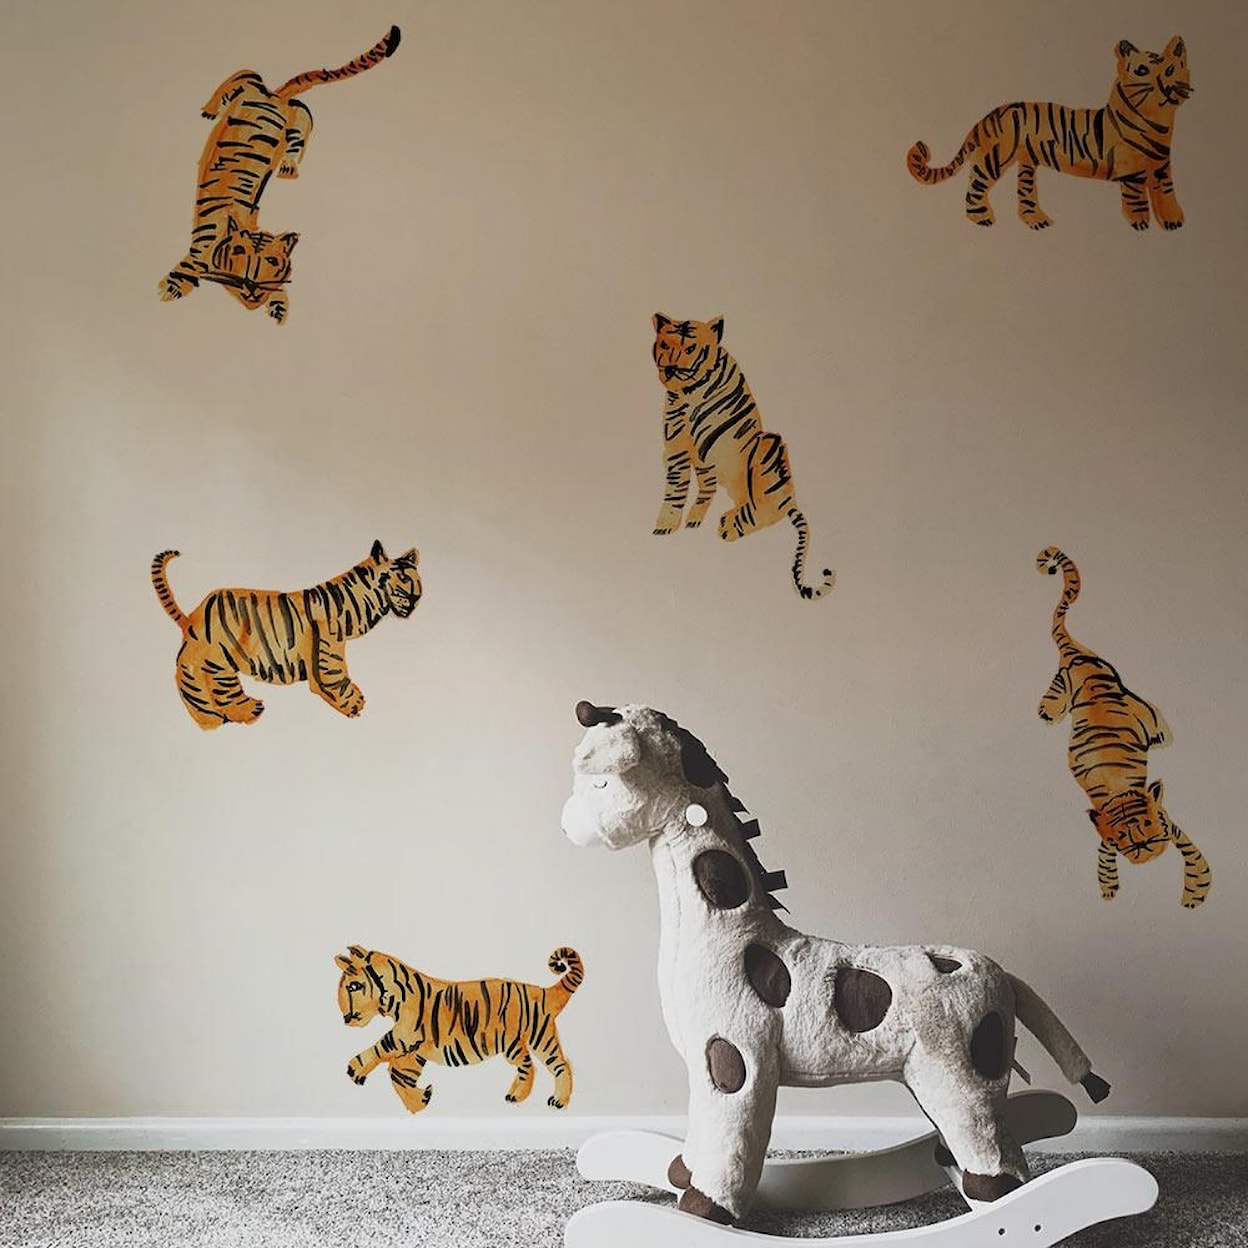 Tempaper Wall Decals Watercolor Tiger